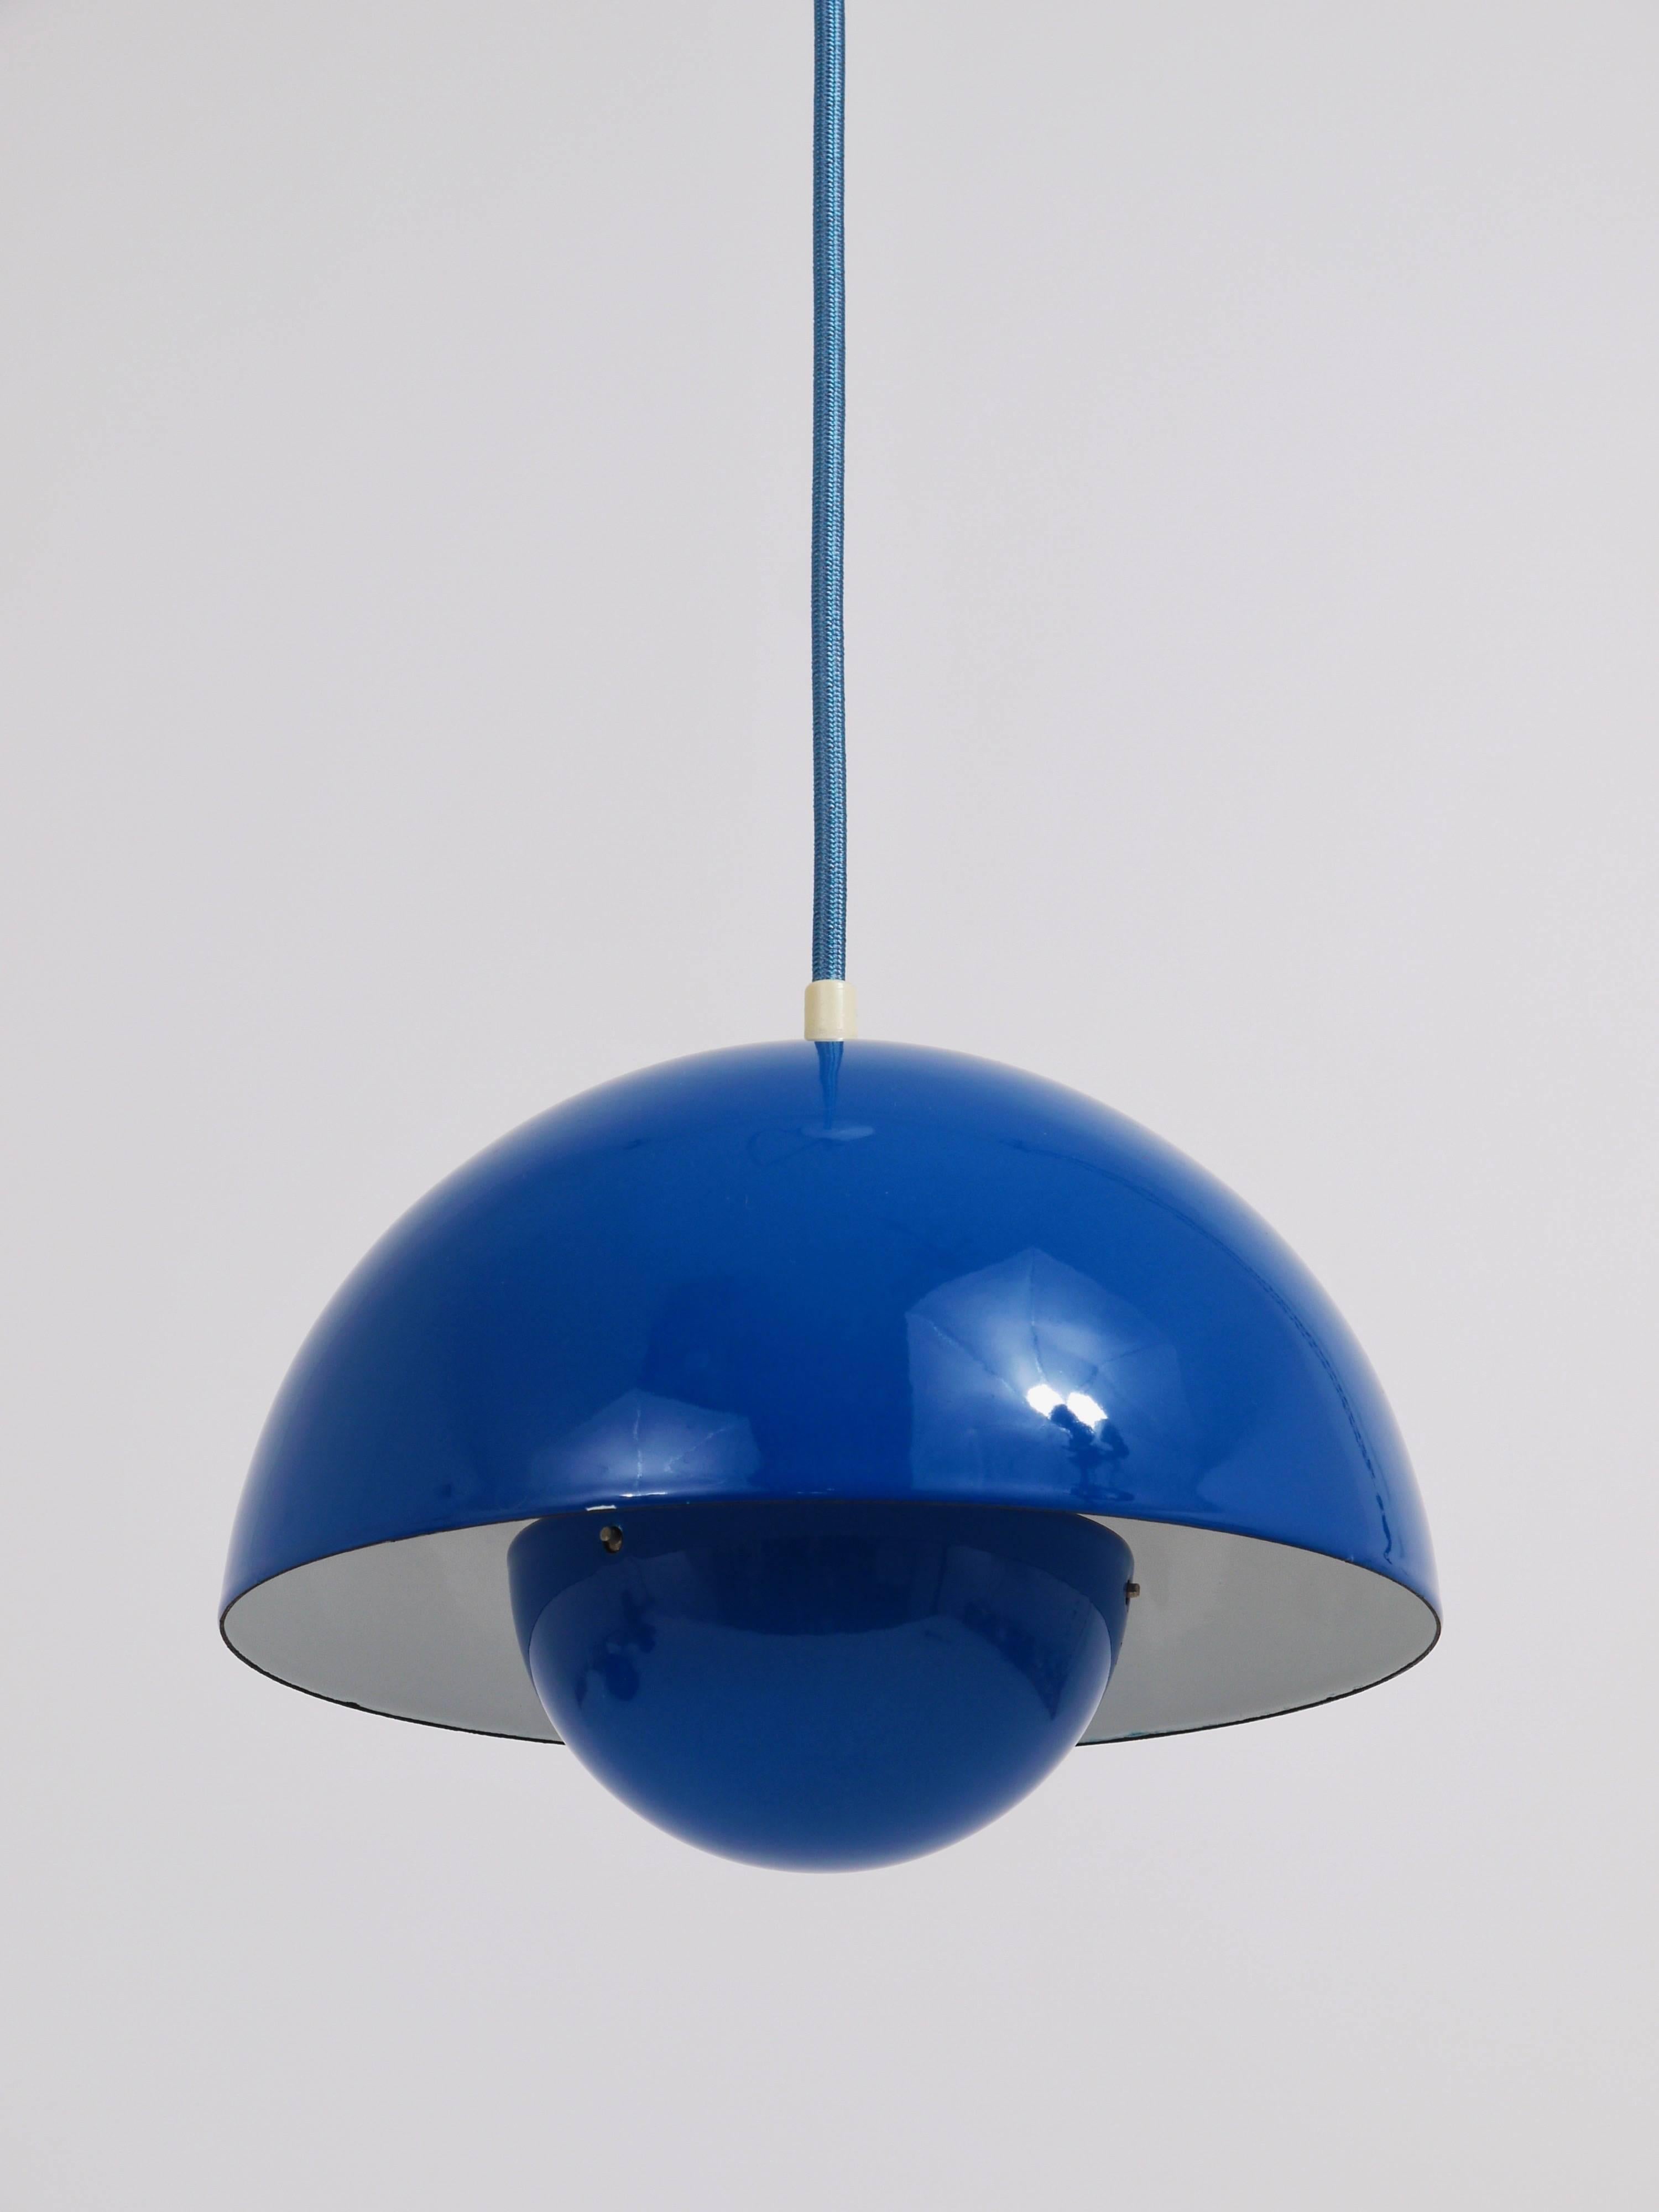 Blue-Green Verner Panton Flowerpot Pendant Lamp, Louis Poulsen, Denmark, 1969 (Dänisch)